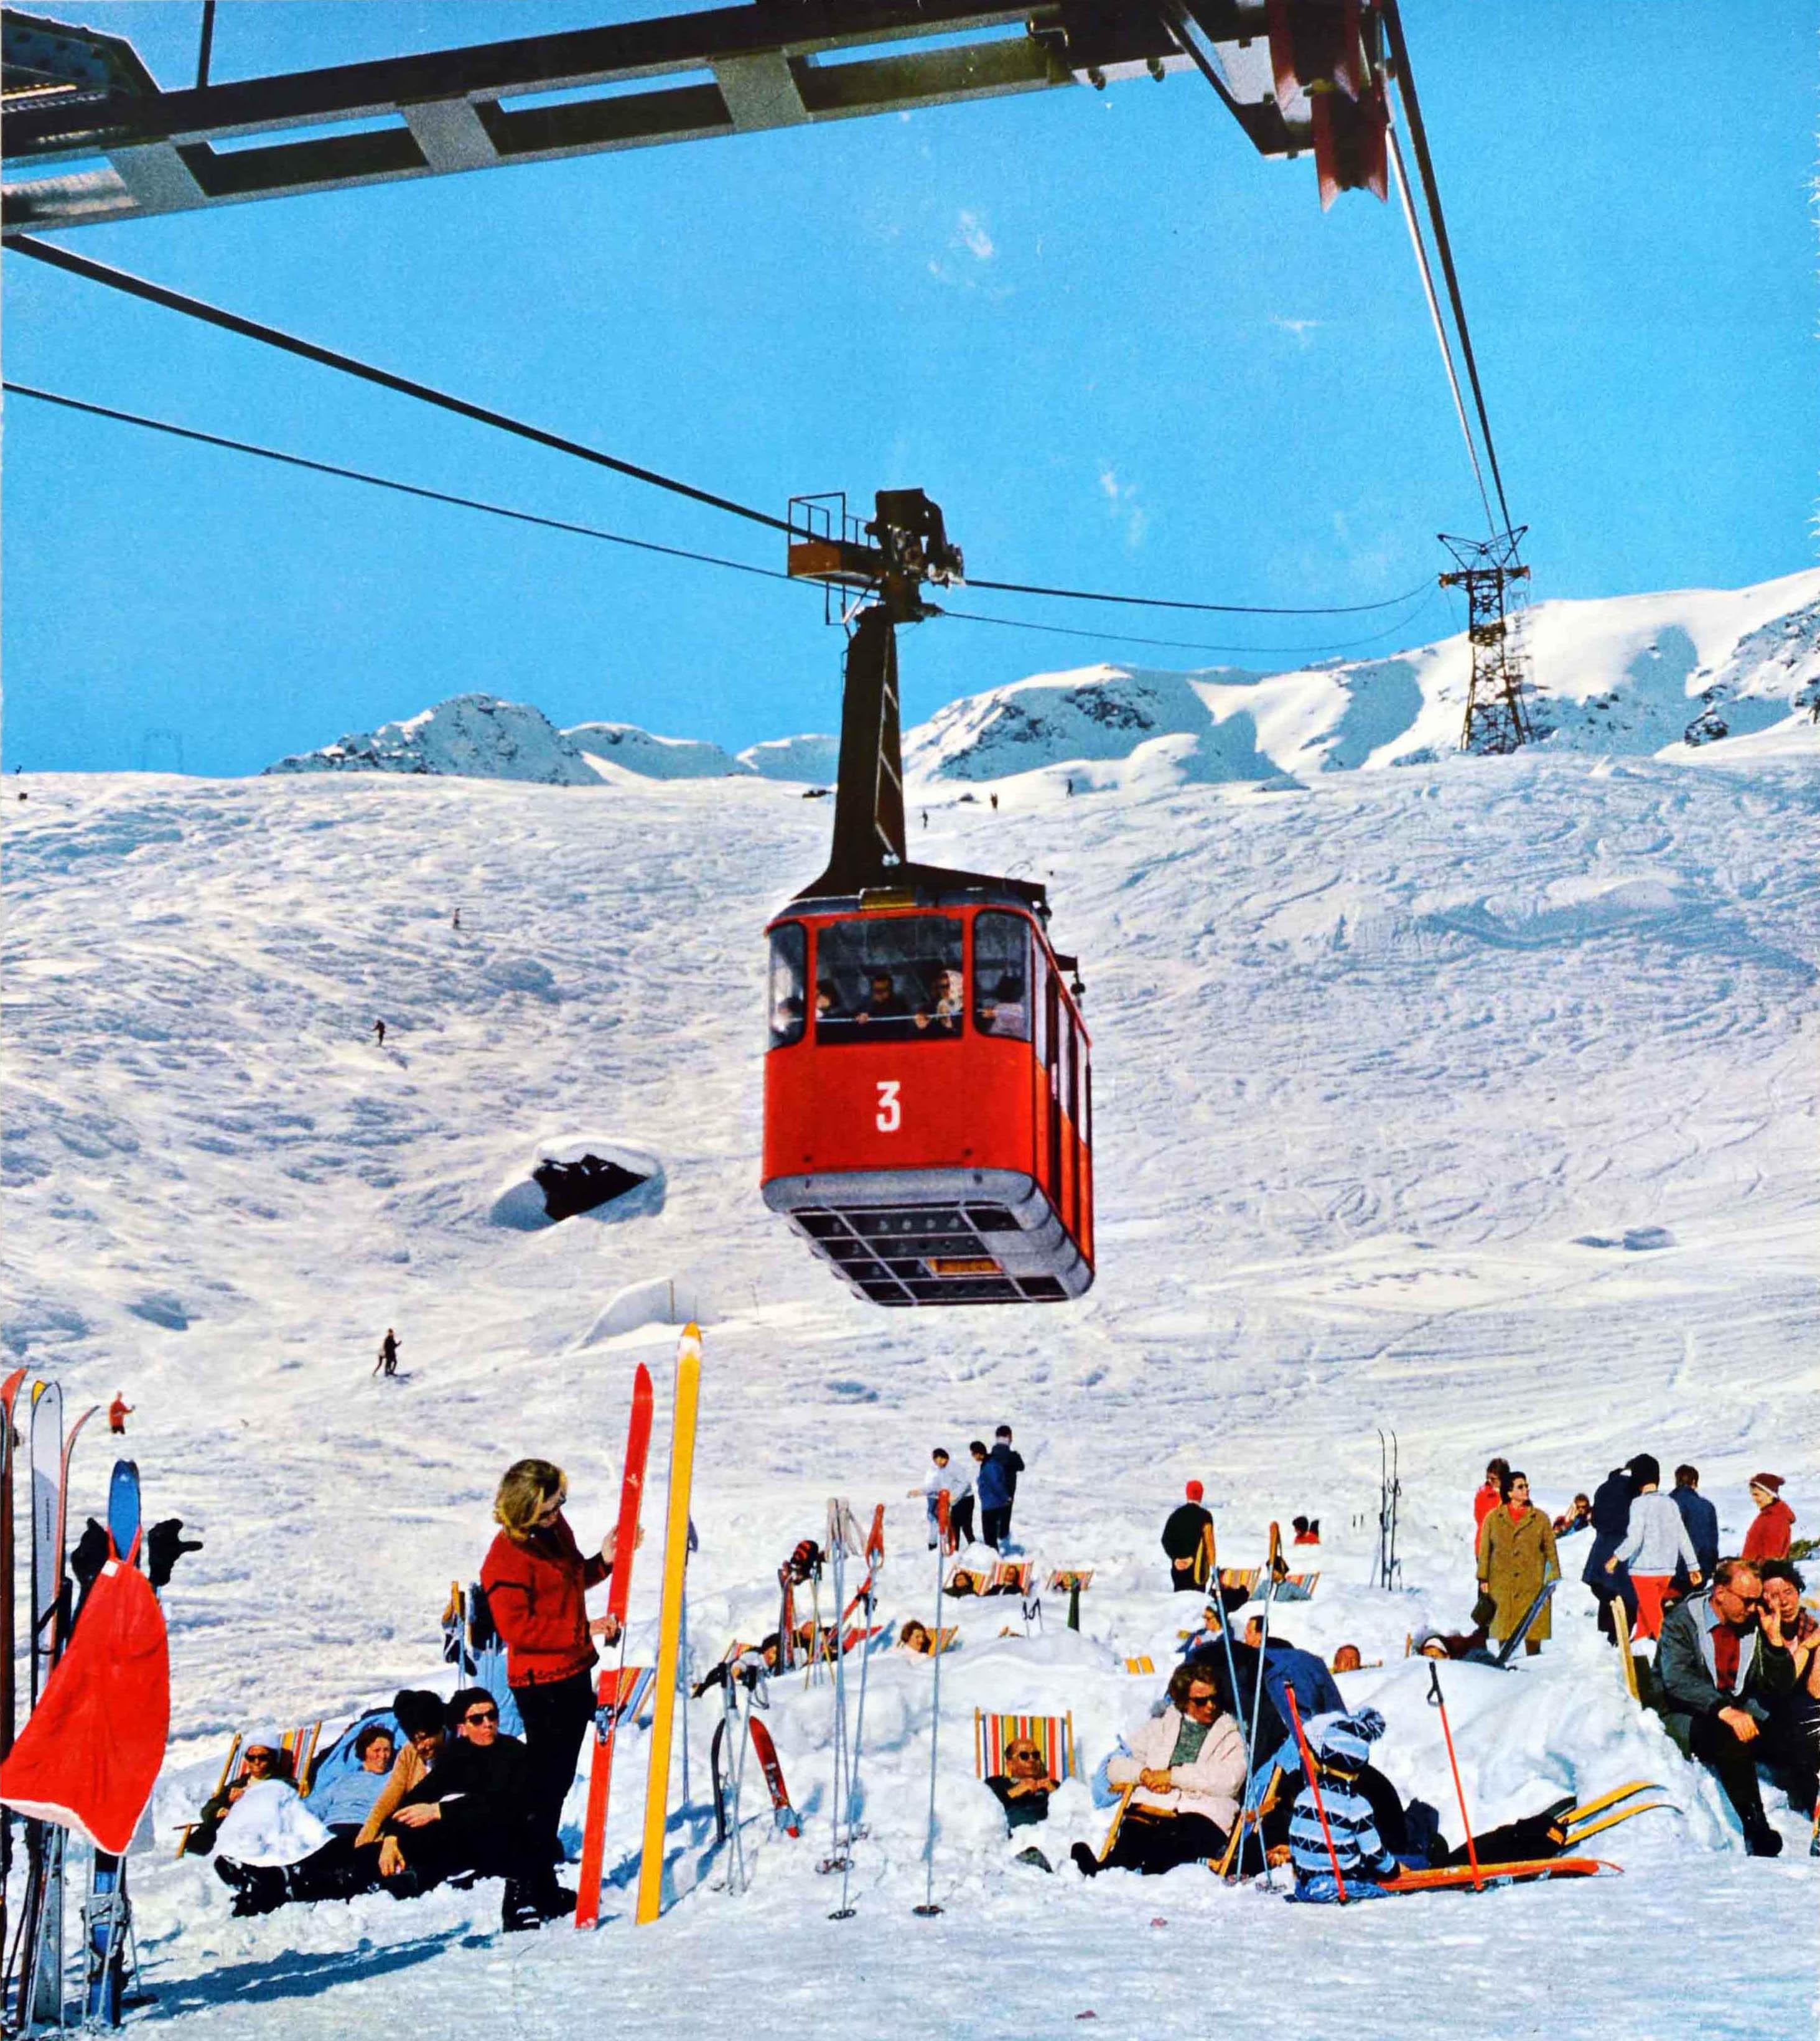 Original Vintage Wintersport-Reiseplakat für Tirol Osterreich Österreich mit einer Fotografie des Skigebiets im Ötztal, die Skifahrer zeigt, die im dichten Schnee sitzen und sich auf Liegestühlen sonnen, unter einer roten Seilbahngondel mit der